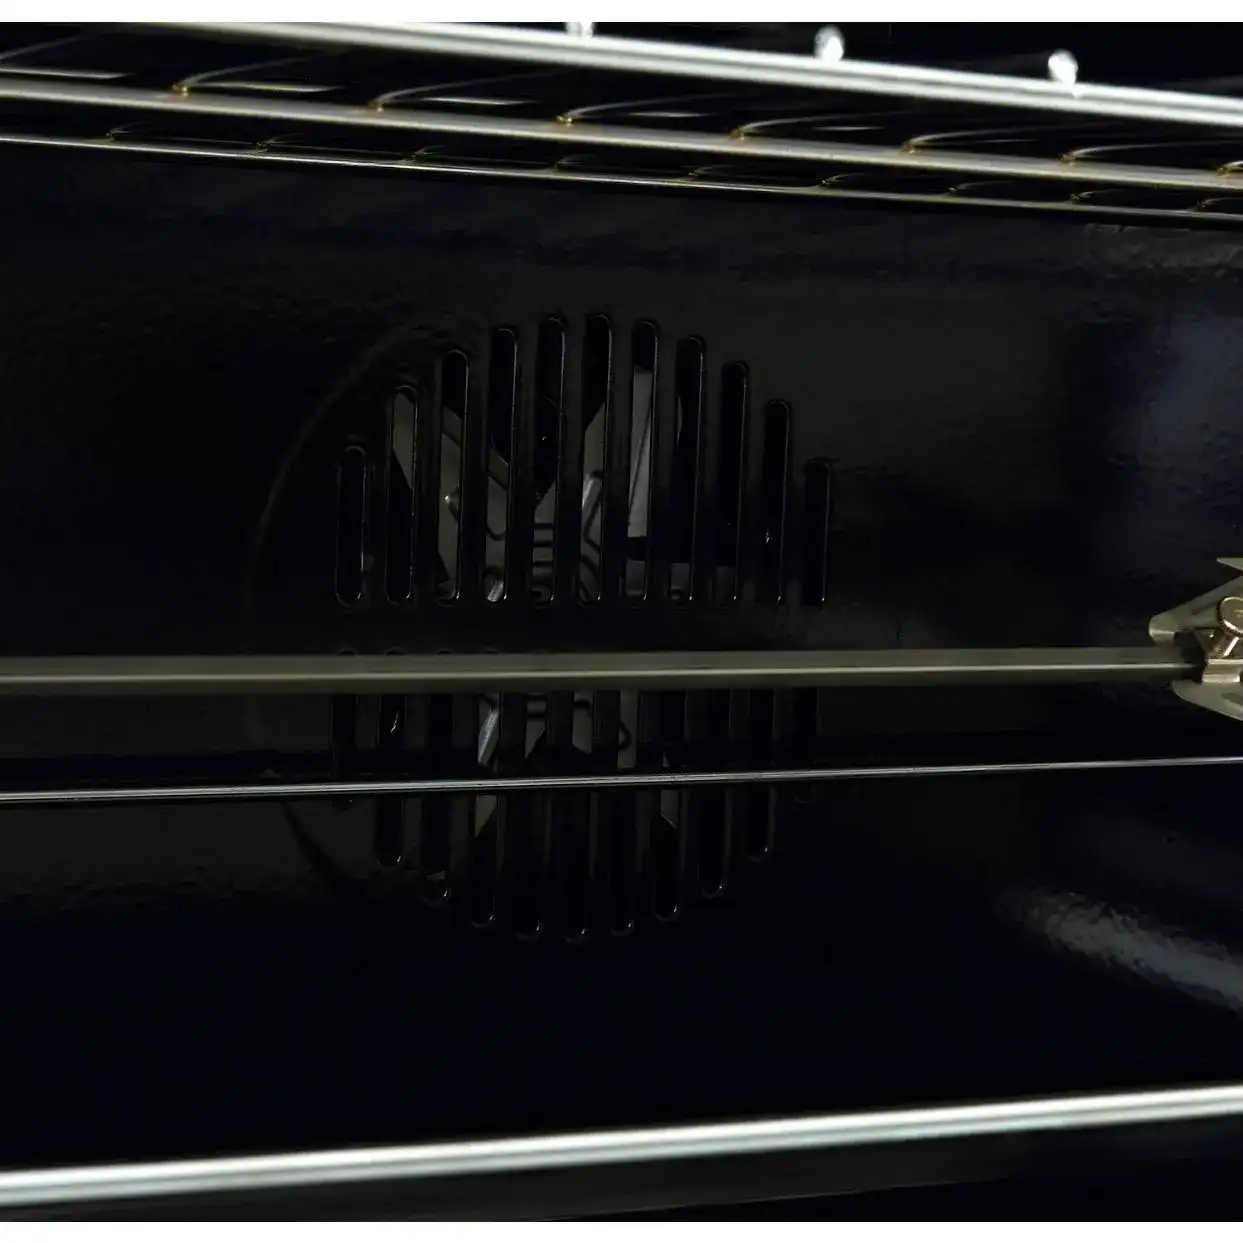 بوتاجاز فريش هامر هيدروليك، 90×60 سم، 5 شعلة، أمان كامل، شاشة ديجيتال تاتش، مروحة، أسود